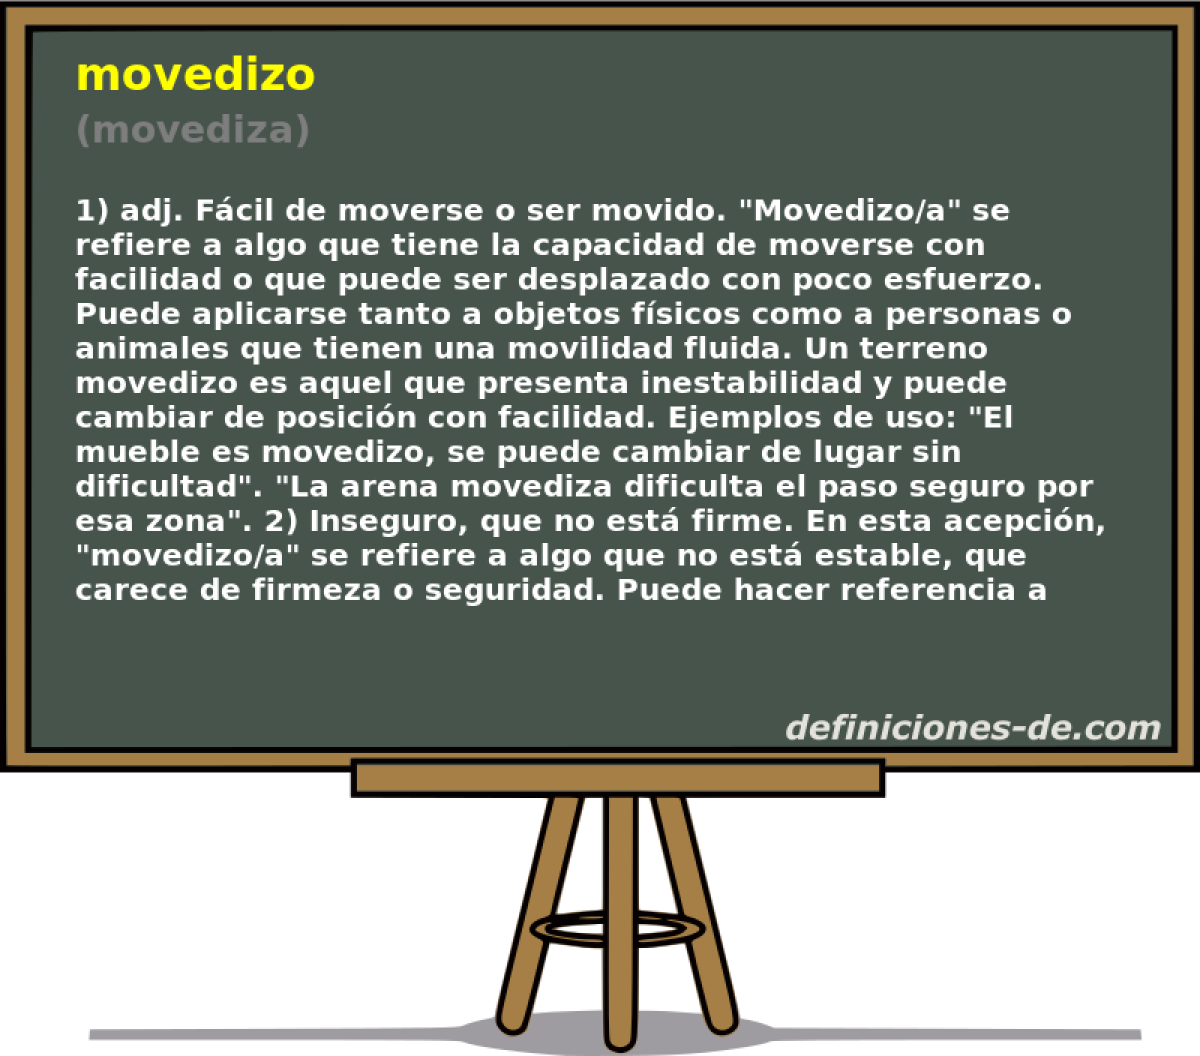 movedizo (movediza)